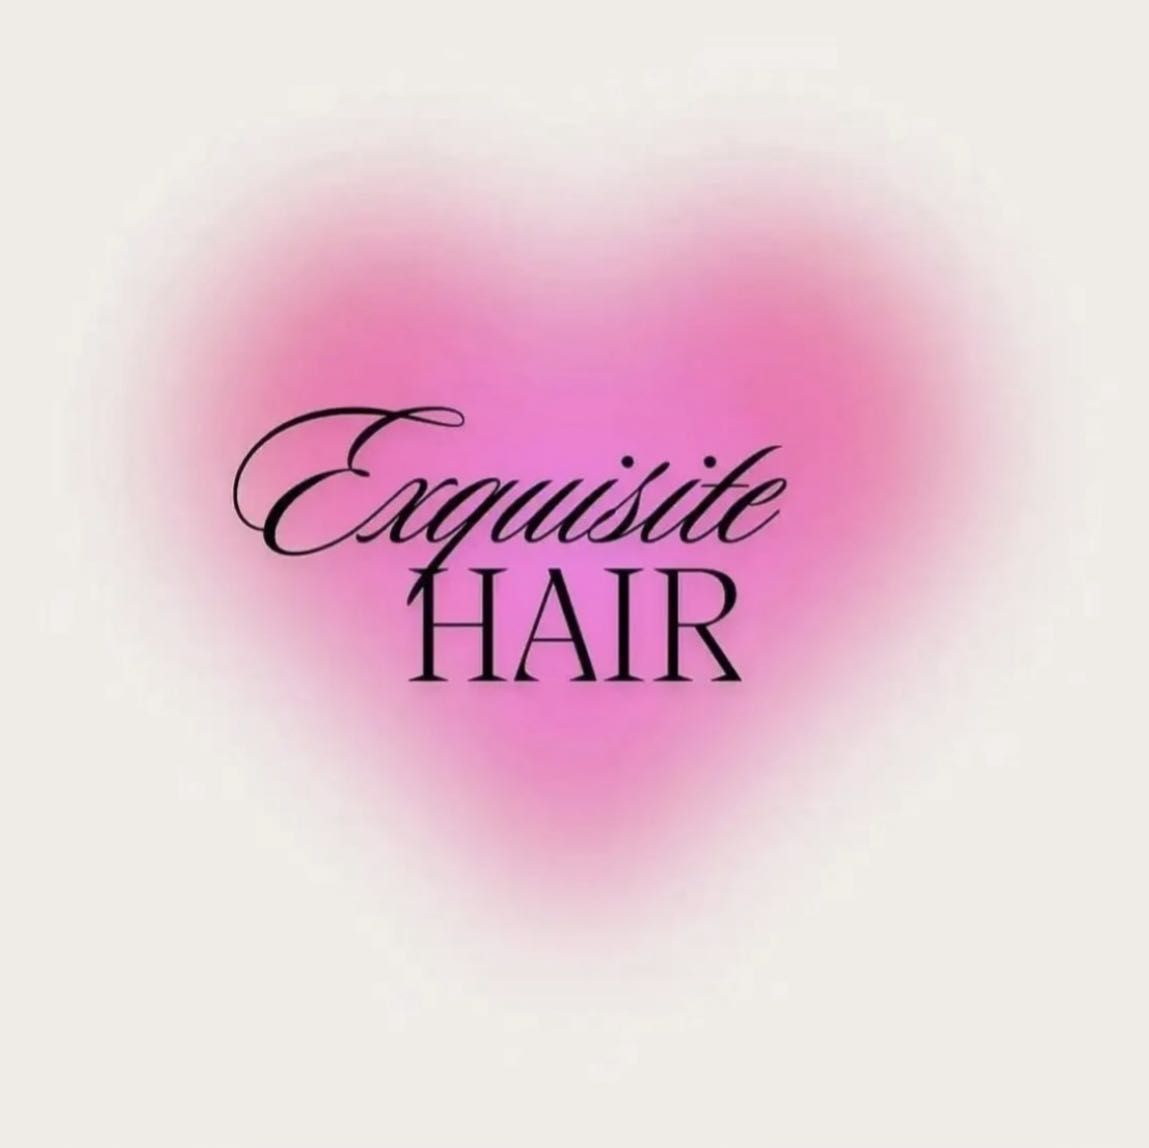 Exquisite Hair by Kayrm, 40 Wall St, Universal hair & barbershop, Norwalk, 06850